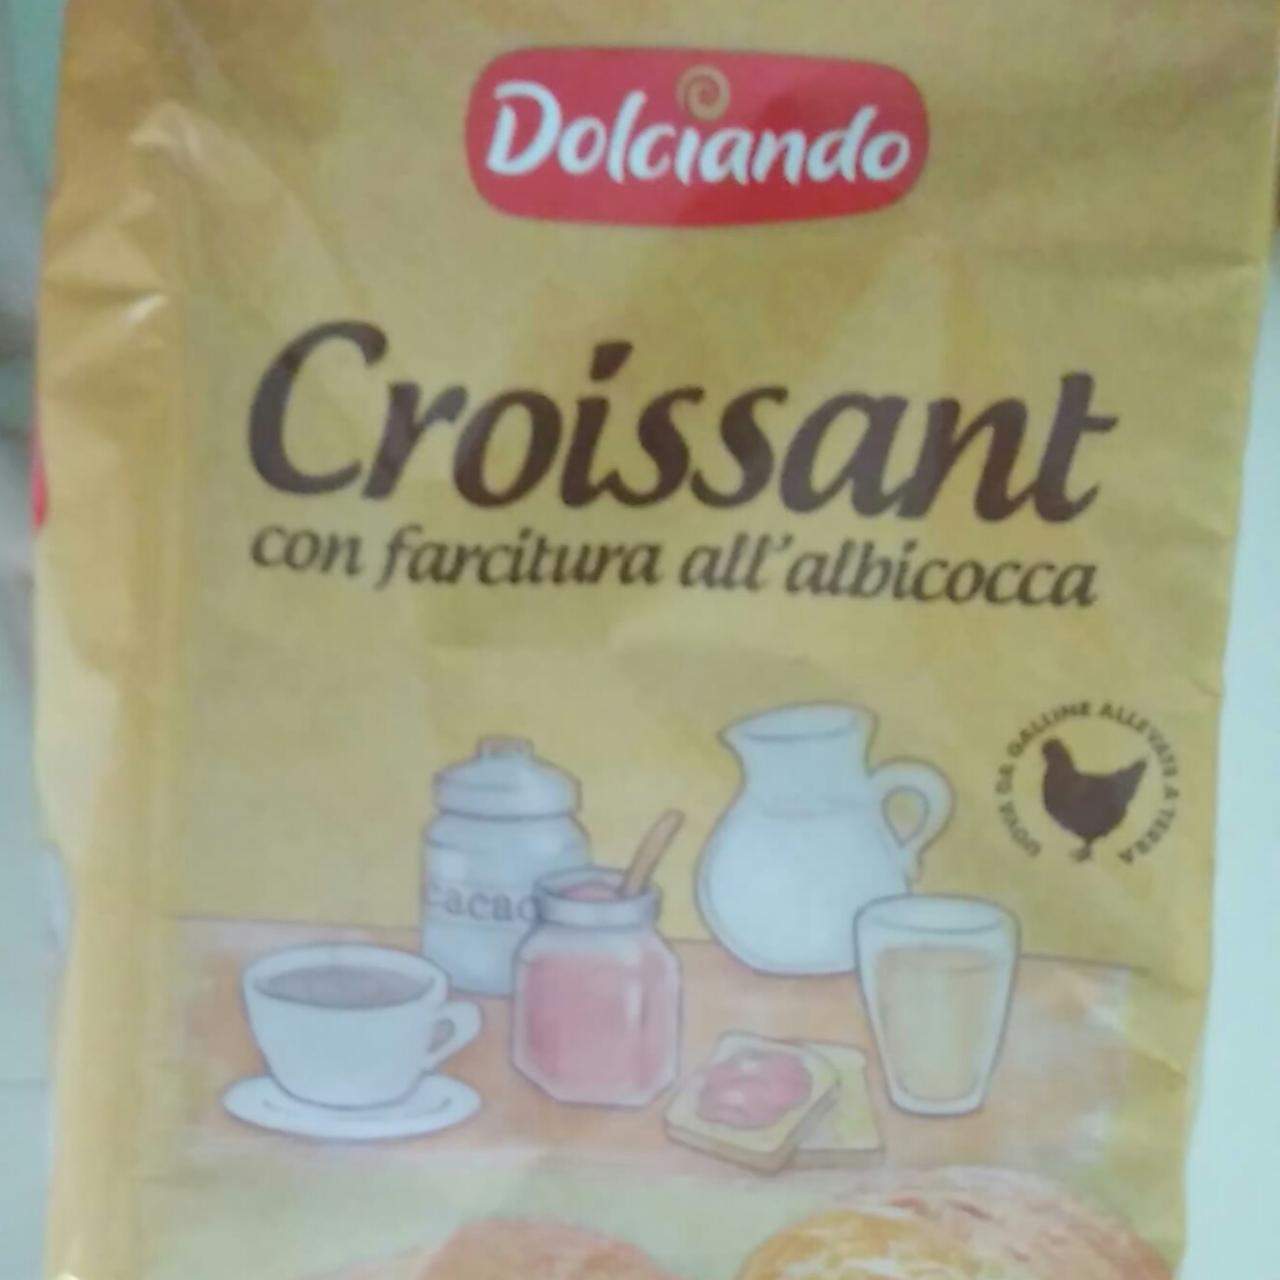 Fotografie - Croissant con farnitura all albicocca Dolciando